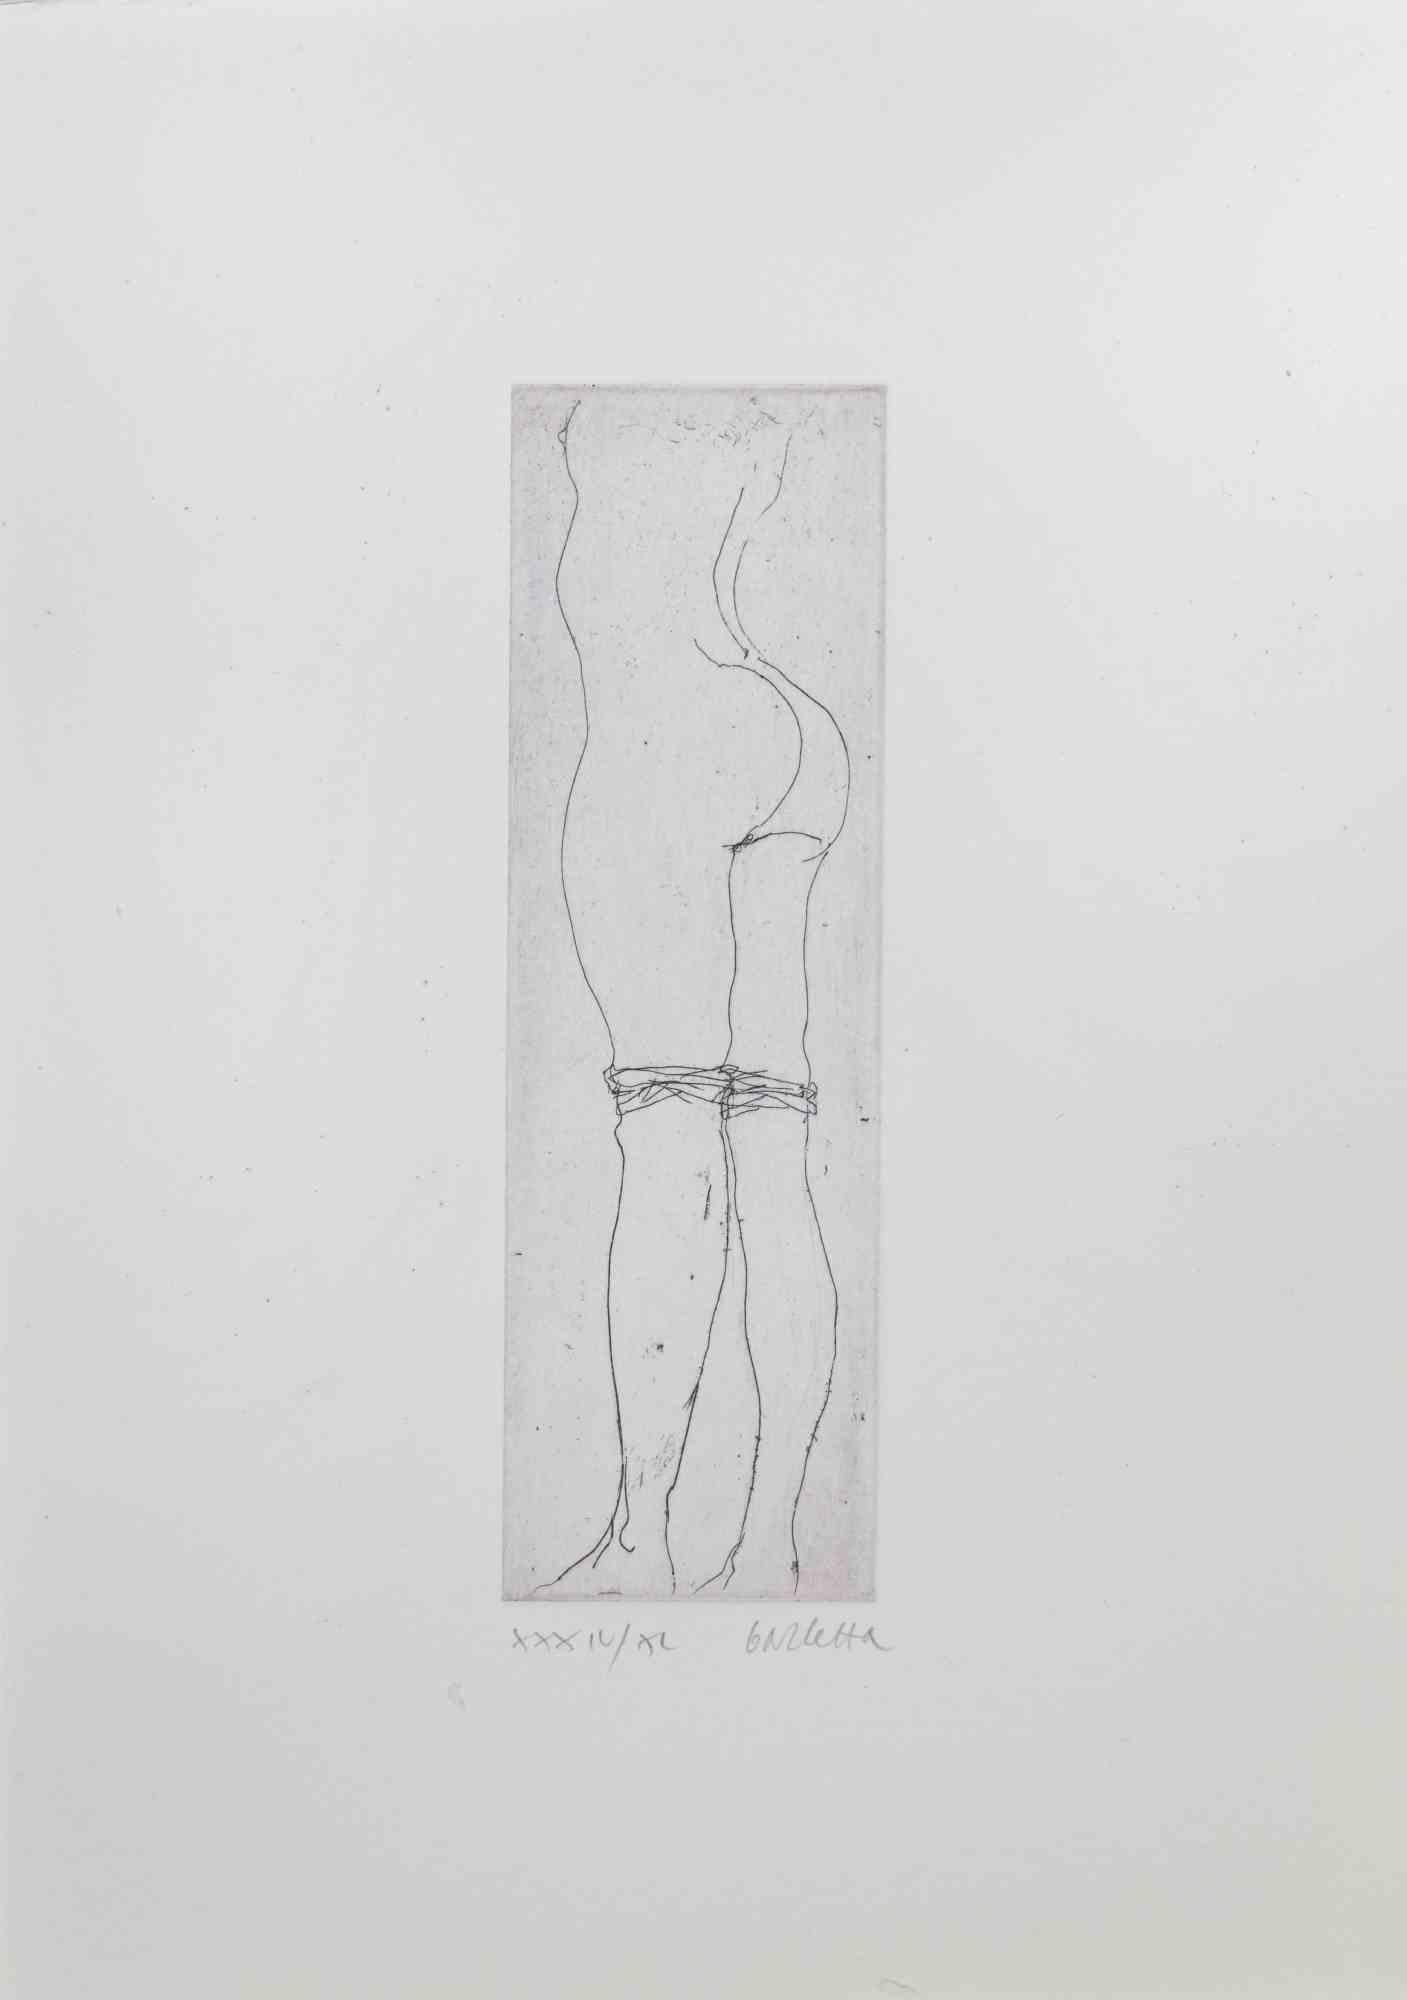 Nude est une gravure sur carton réalisée par Sergio Barletta en 1974. 

dimensions de la feuille, 25 x 17 cm.

Signé au crayon dans la marge inférieure droite.

Edition XXXIV/XL 

Bonnes conditions